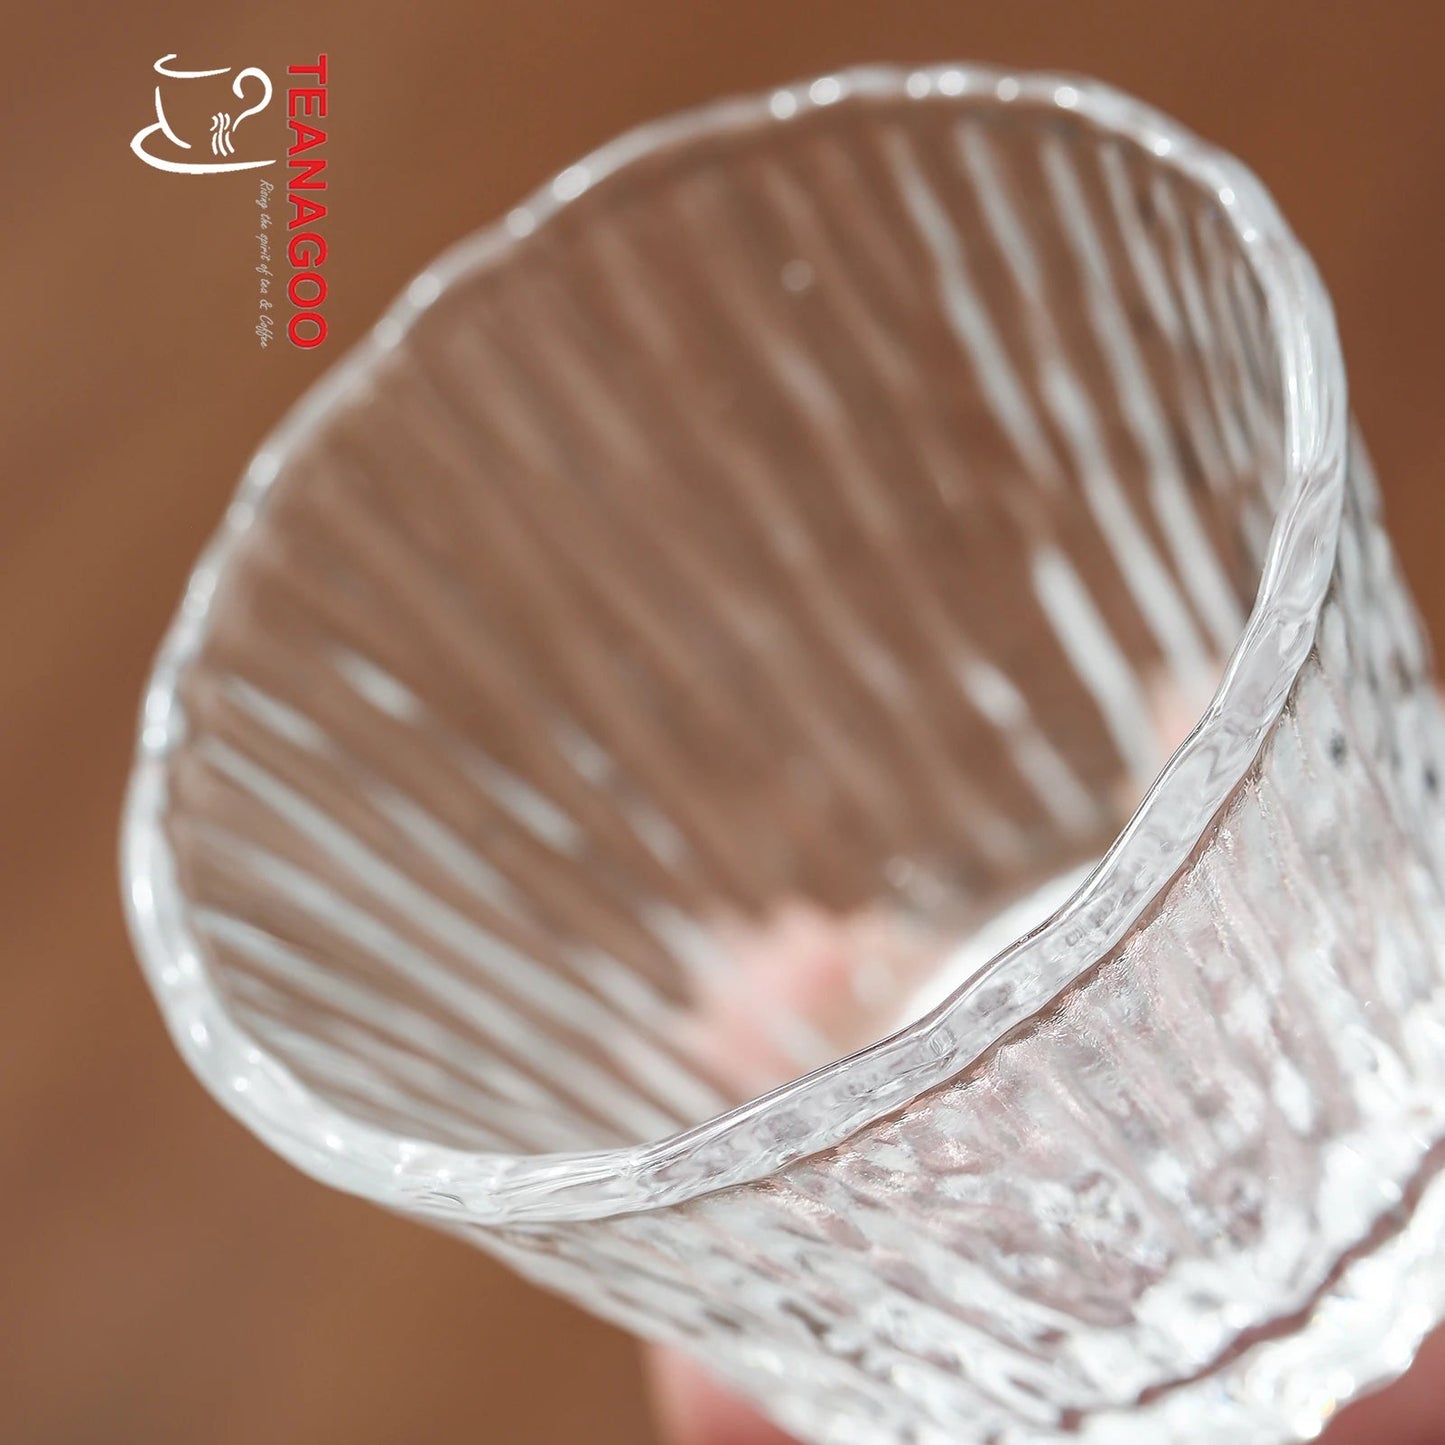 Heat Resistant Glass Tea Cup Handmade Gongfu Tea ware